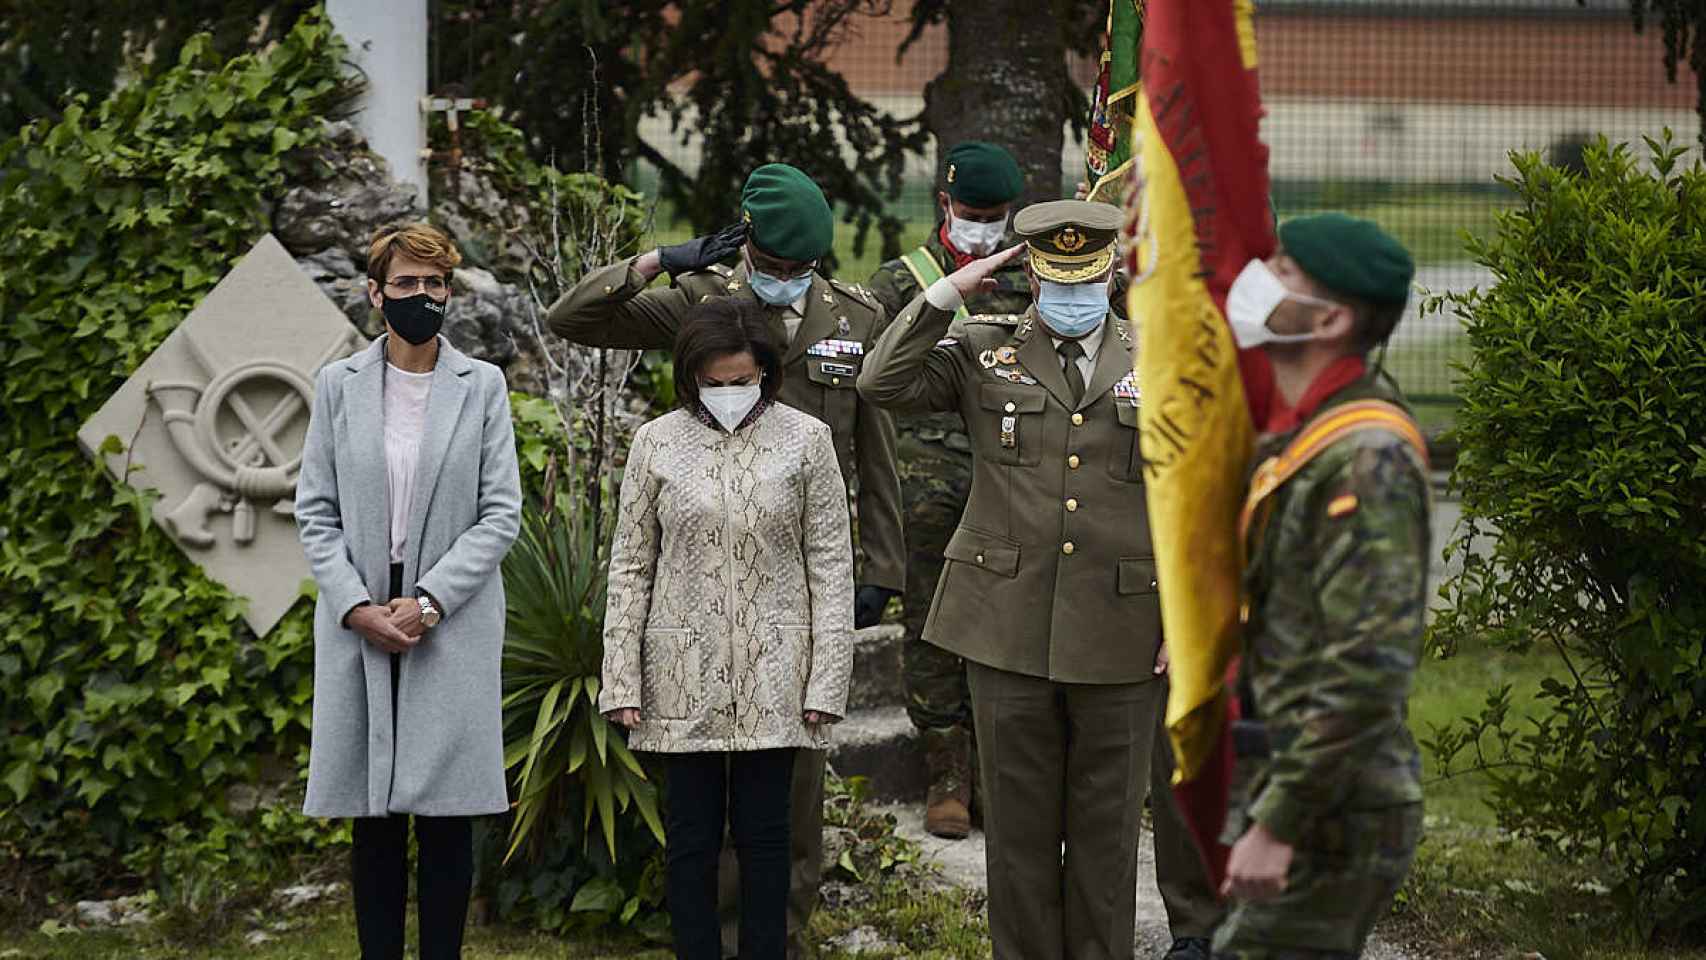 La ministra de Defensa, Margarita Robles y la presidenta del Gobierno de Navarra, María Chivite, visitan el Regimiento América 66, al que pertenecía el cabo Pérez.